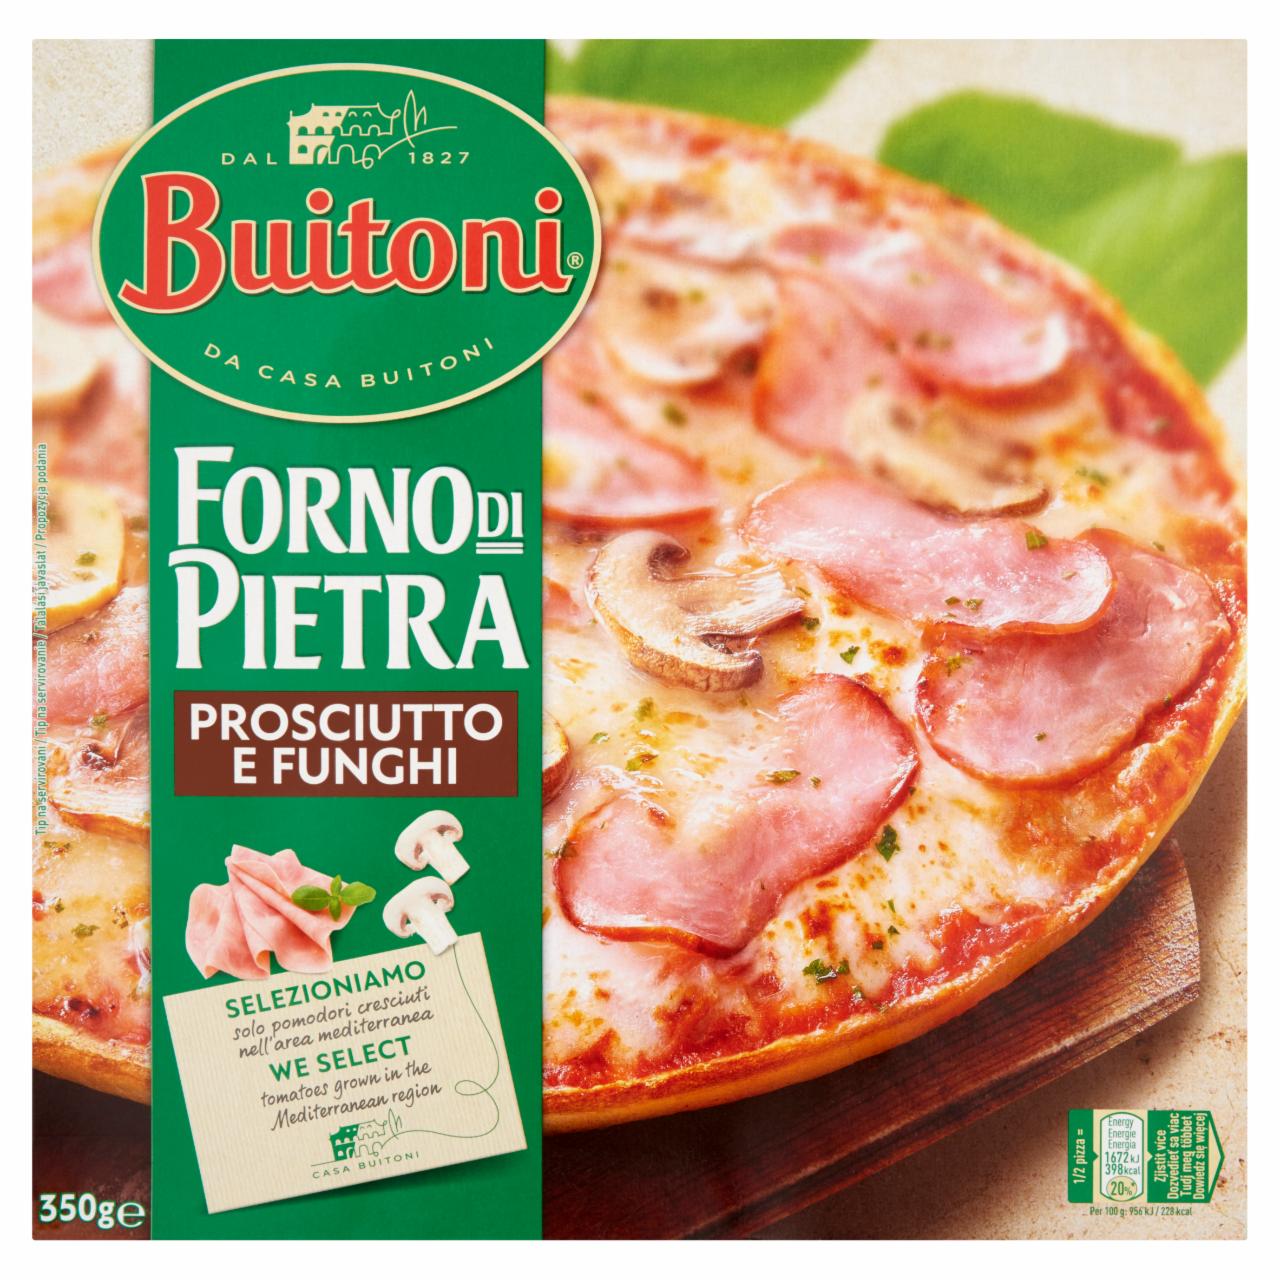 Képek - Buitoni Forno di Pietra gyorsfagyasztott sonkás-gombás pizza 350 g